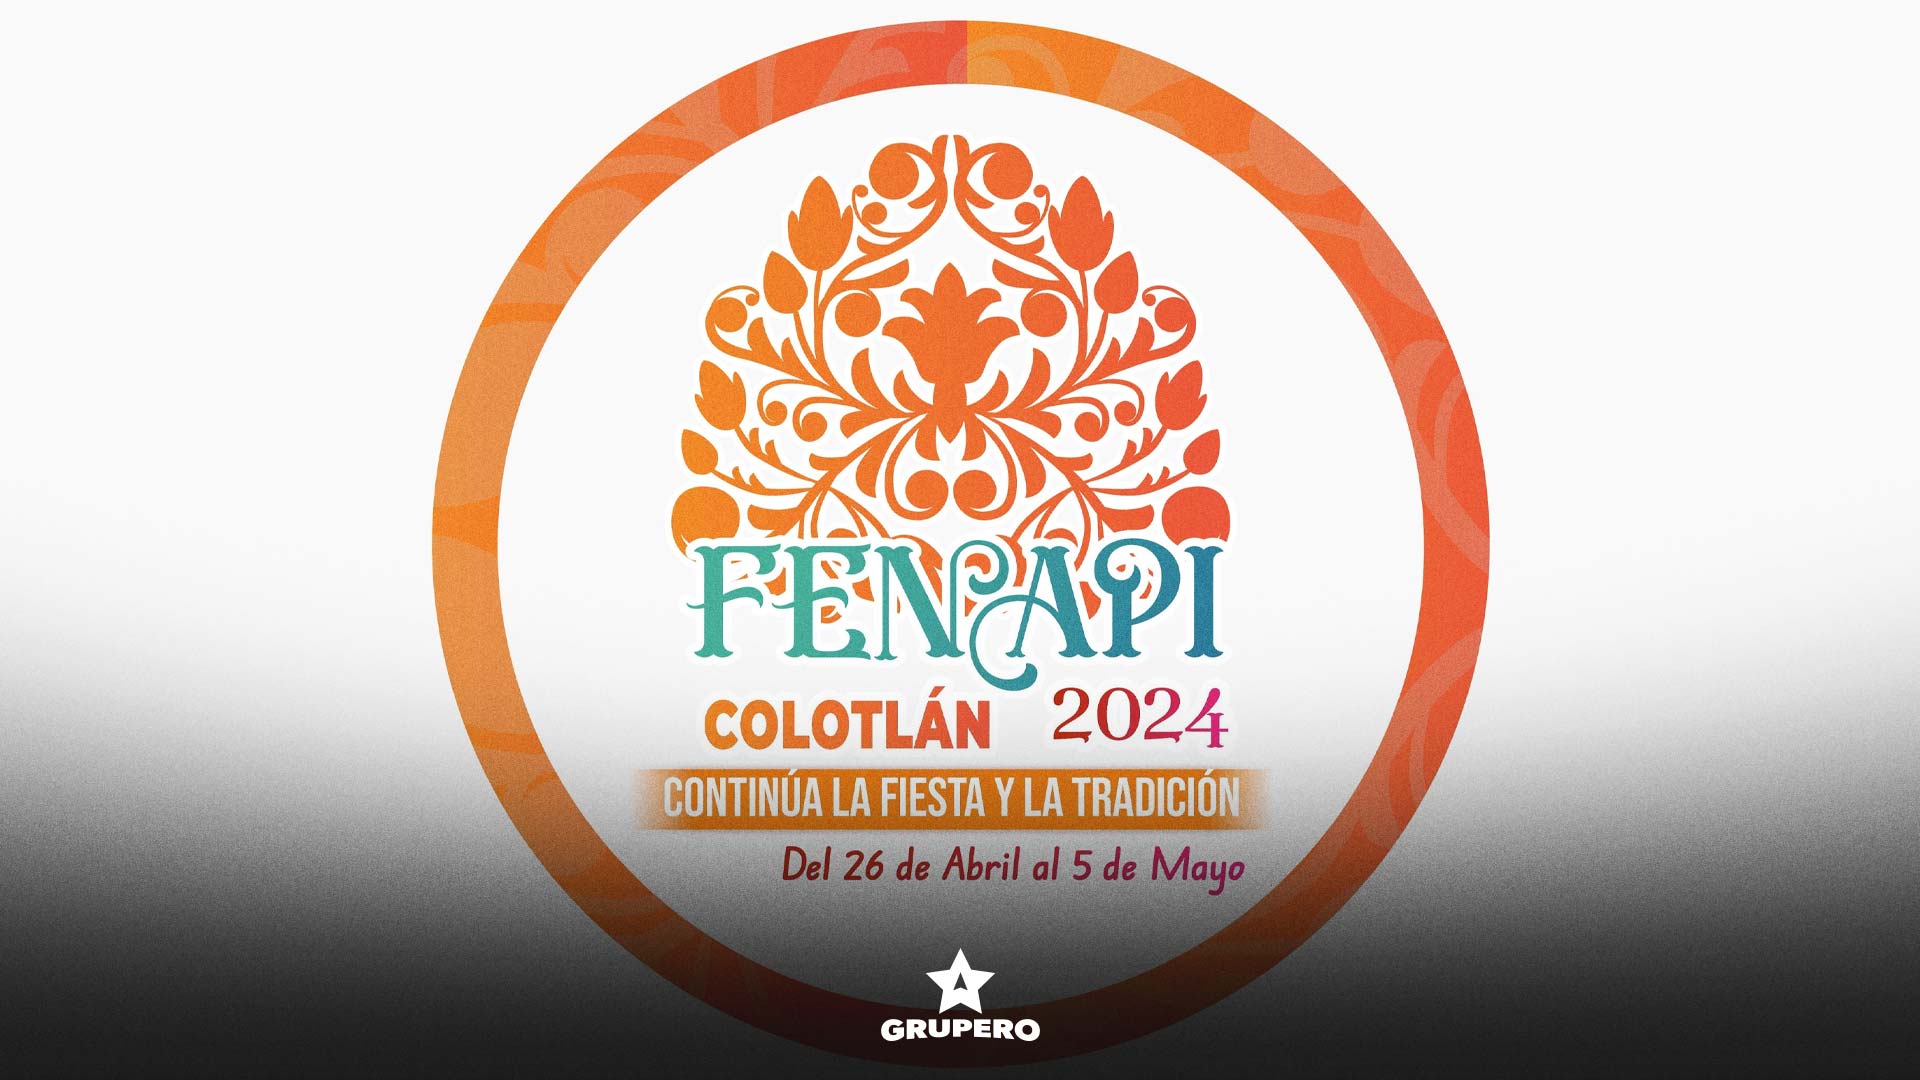 FENAPI Colotlán 2024